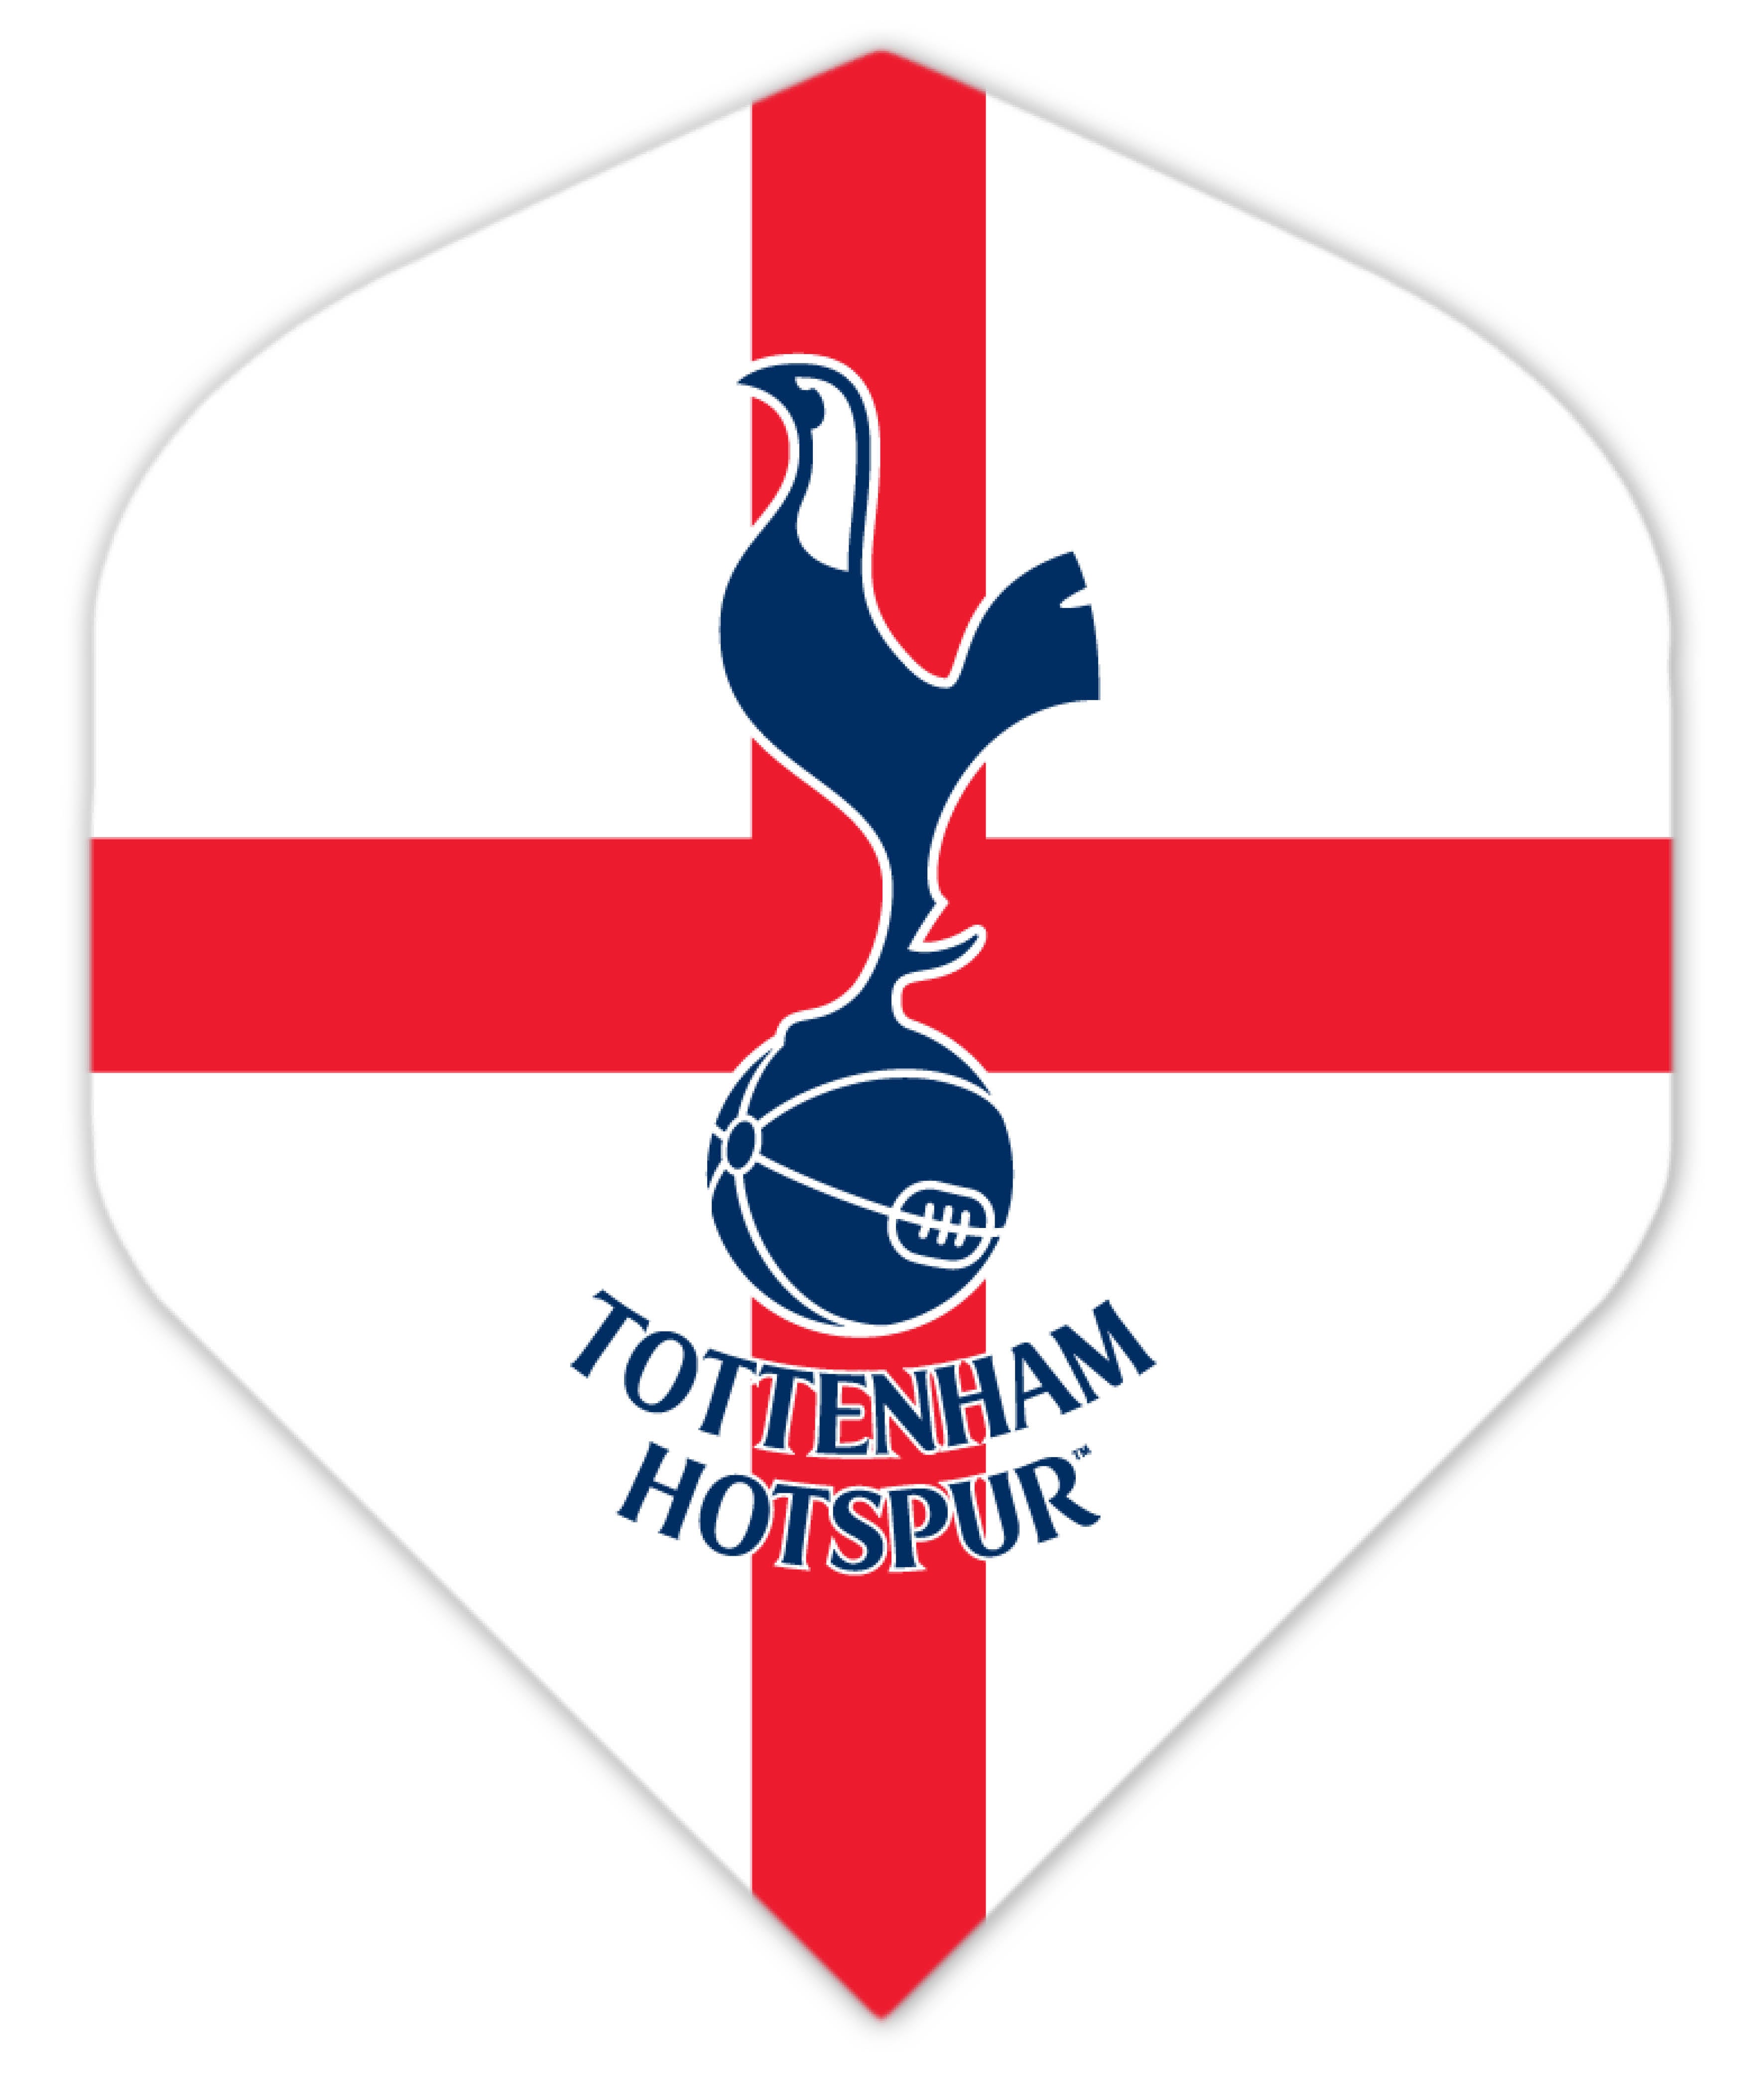 Special Edition Tottenham Hotspur Football Club Standard